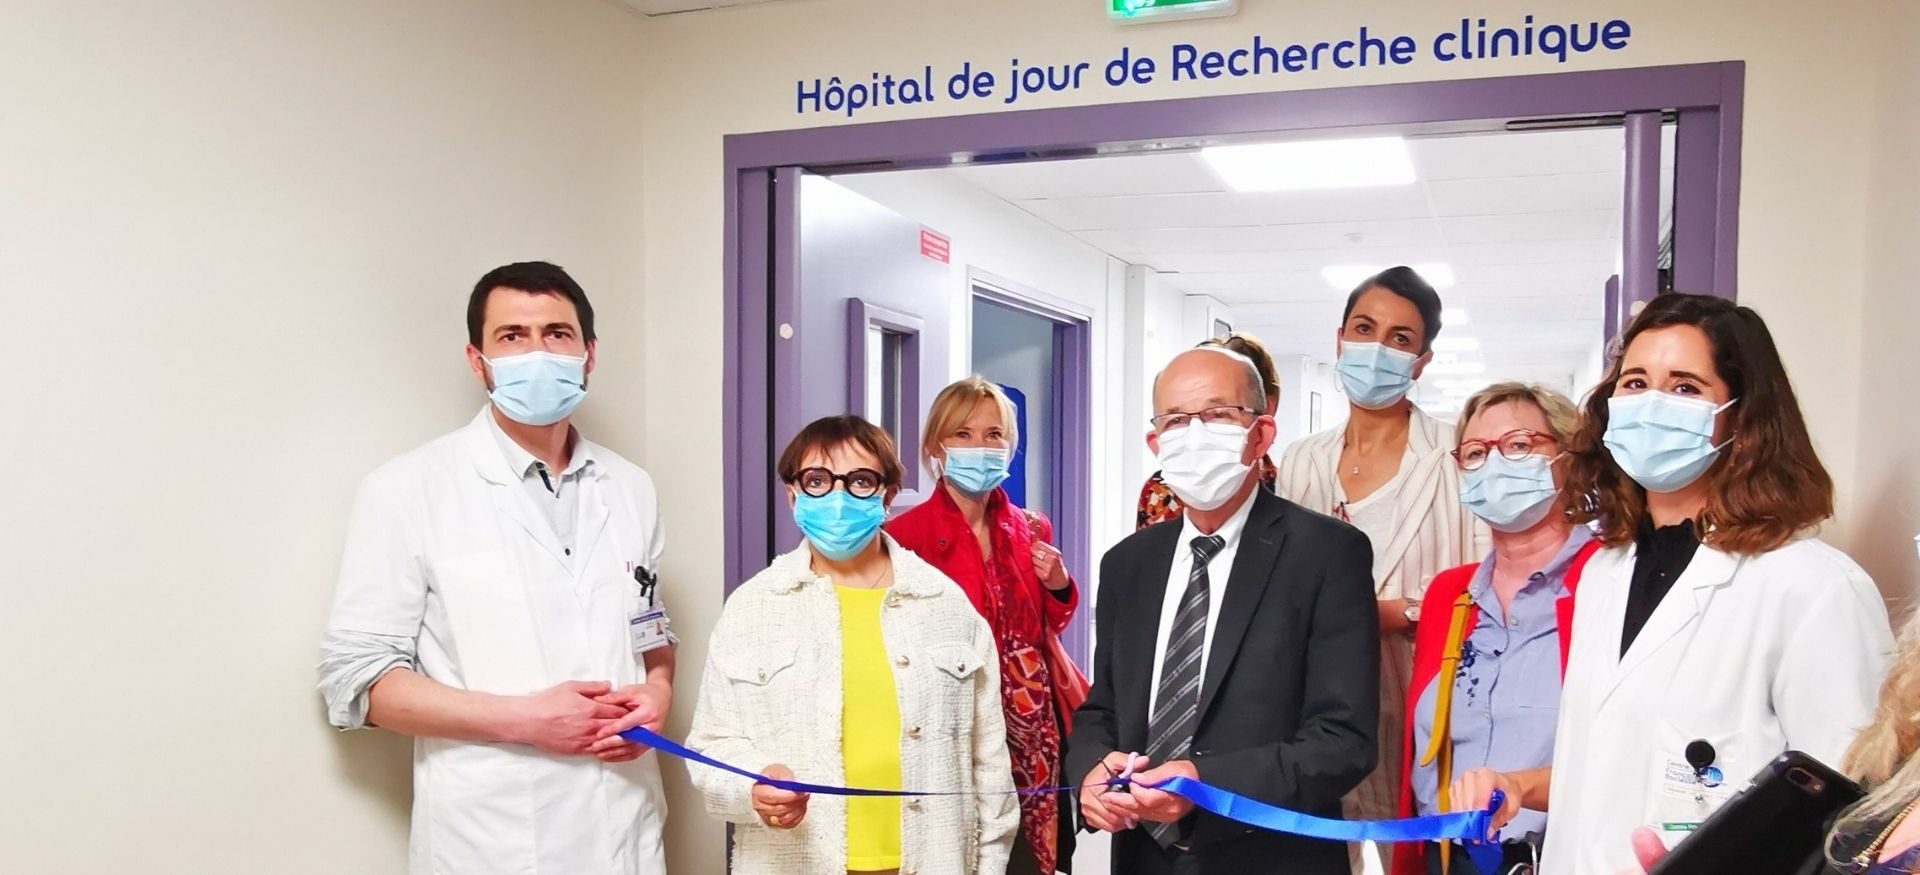 Inauguration de l'hôpital de jour de recherche clinique du Centre Baclesse (Unité IRIS)